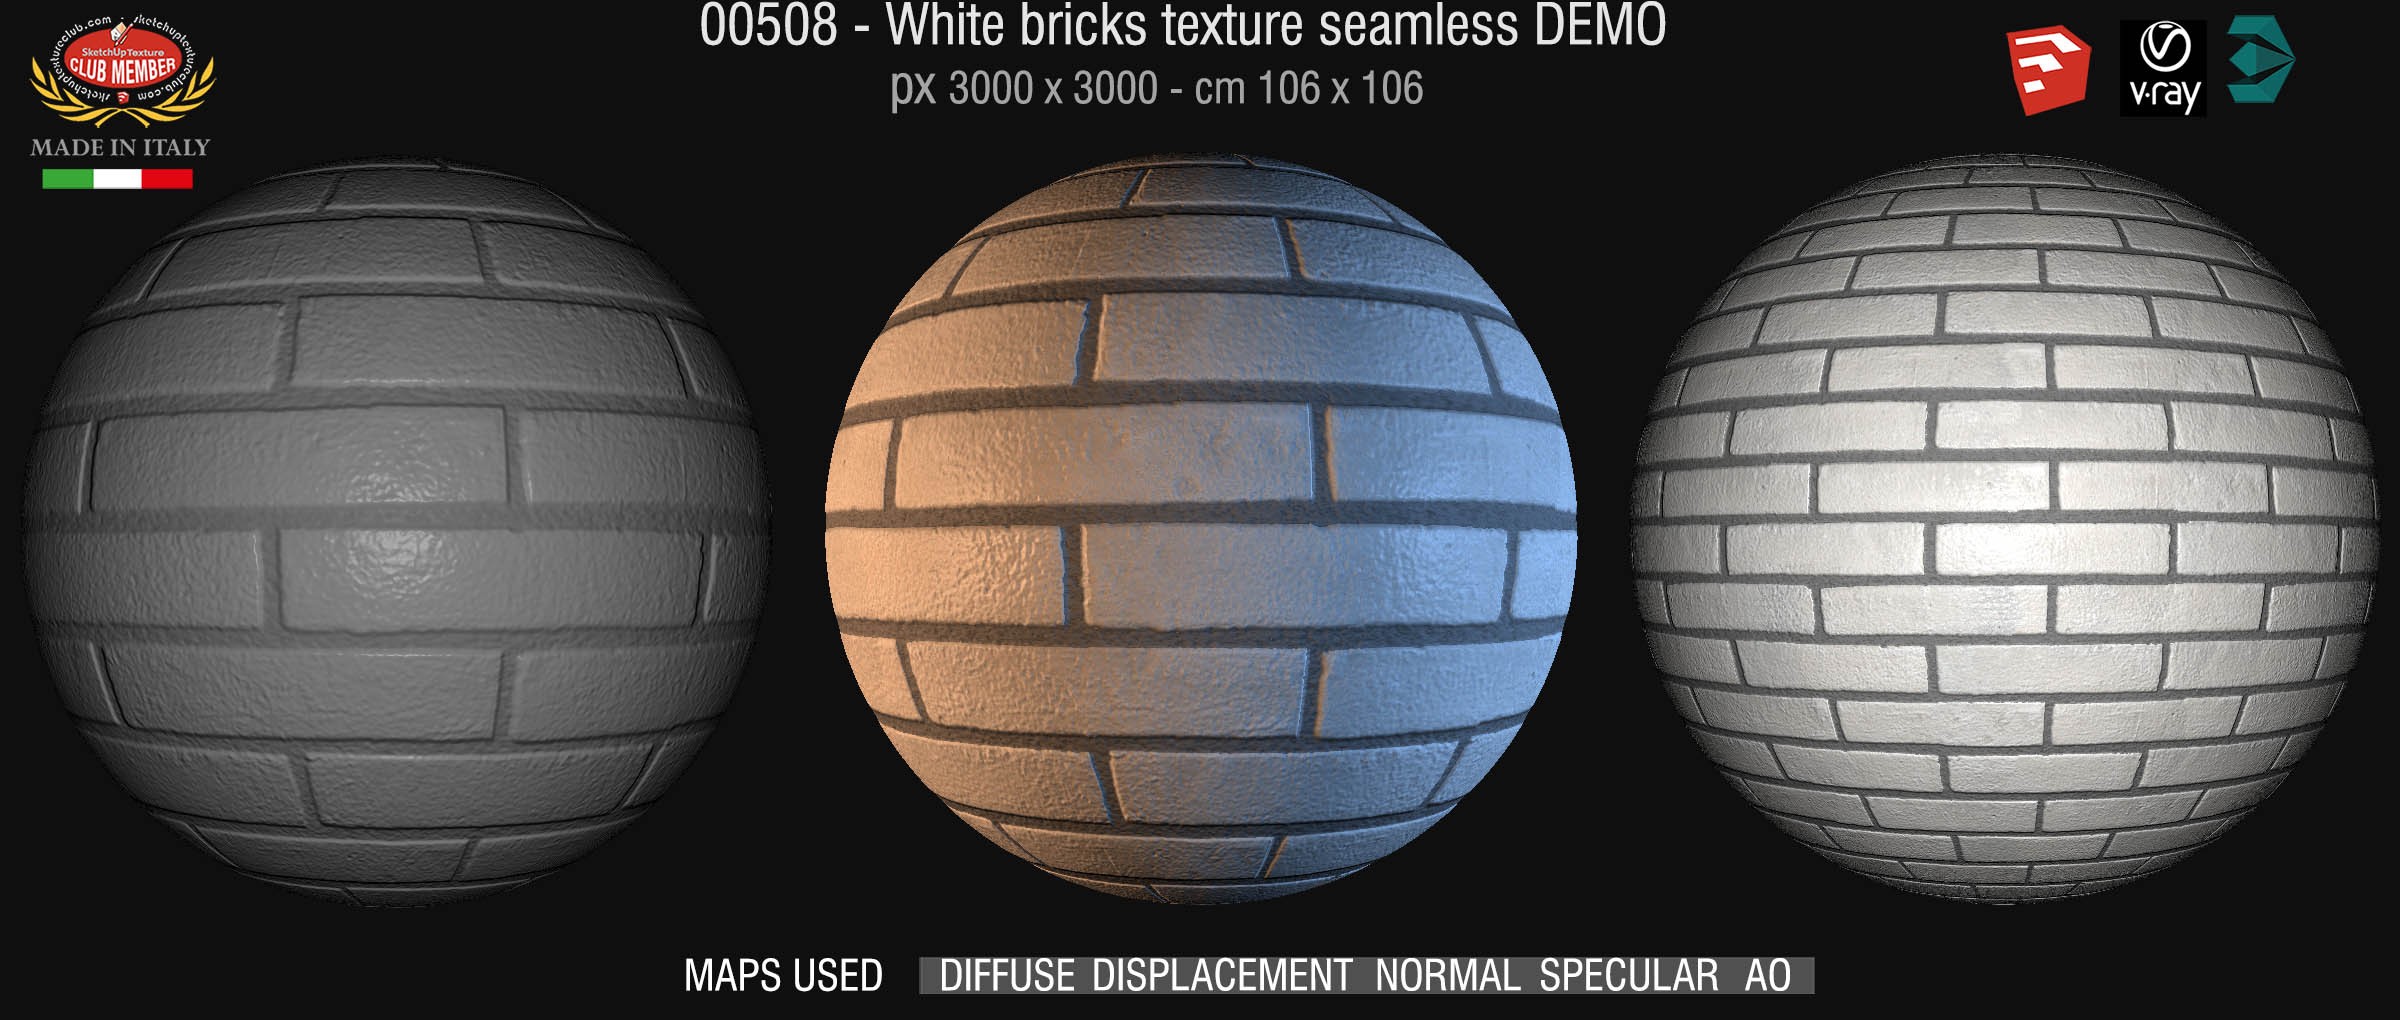 00508 White bricks texture seamless + maps DEMO